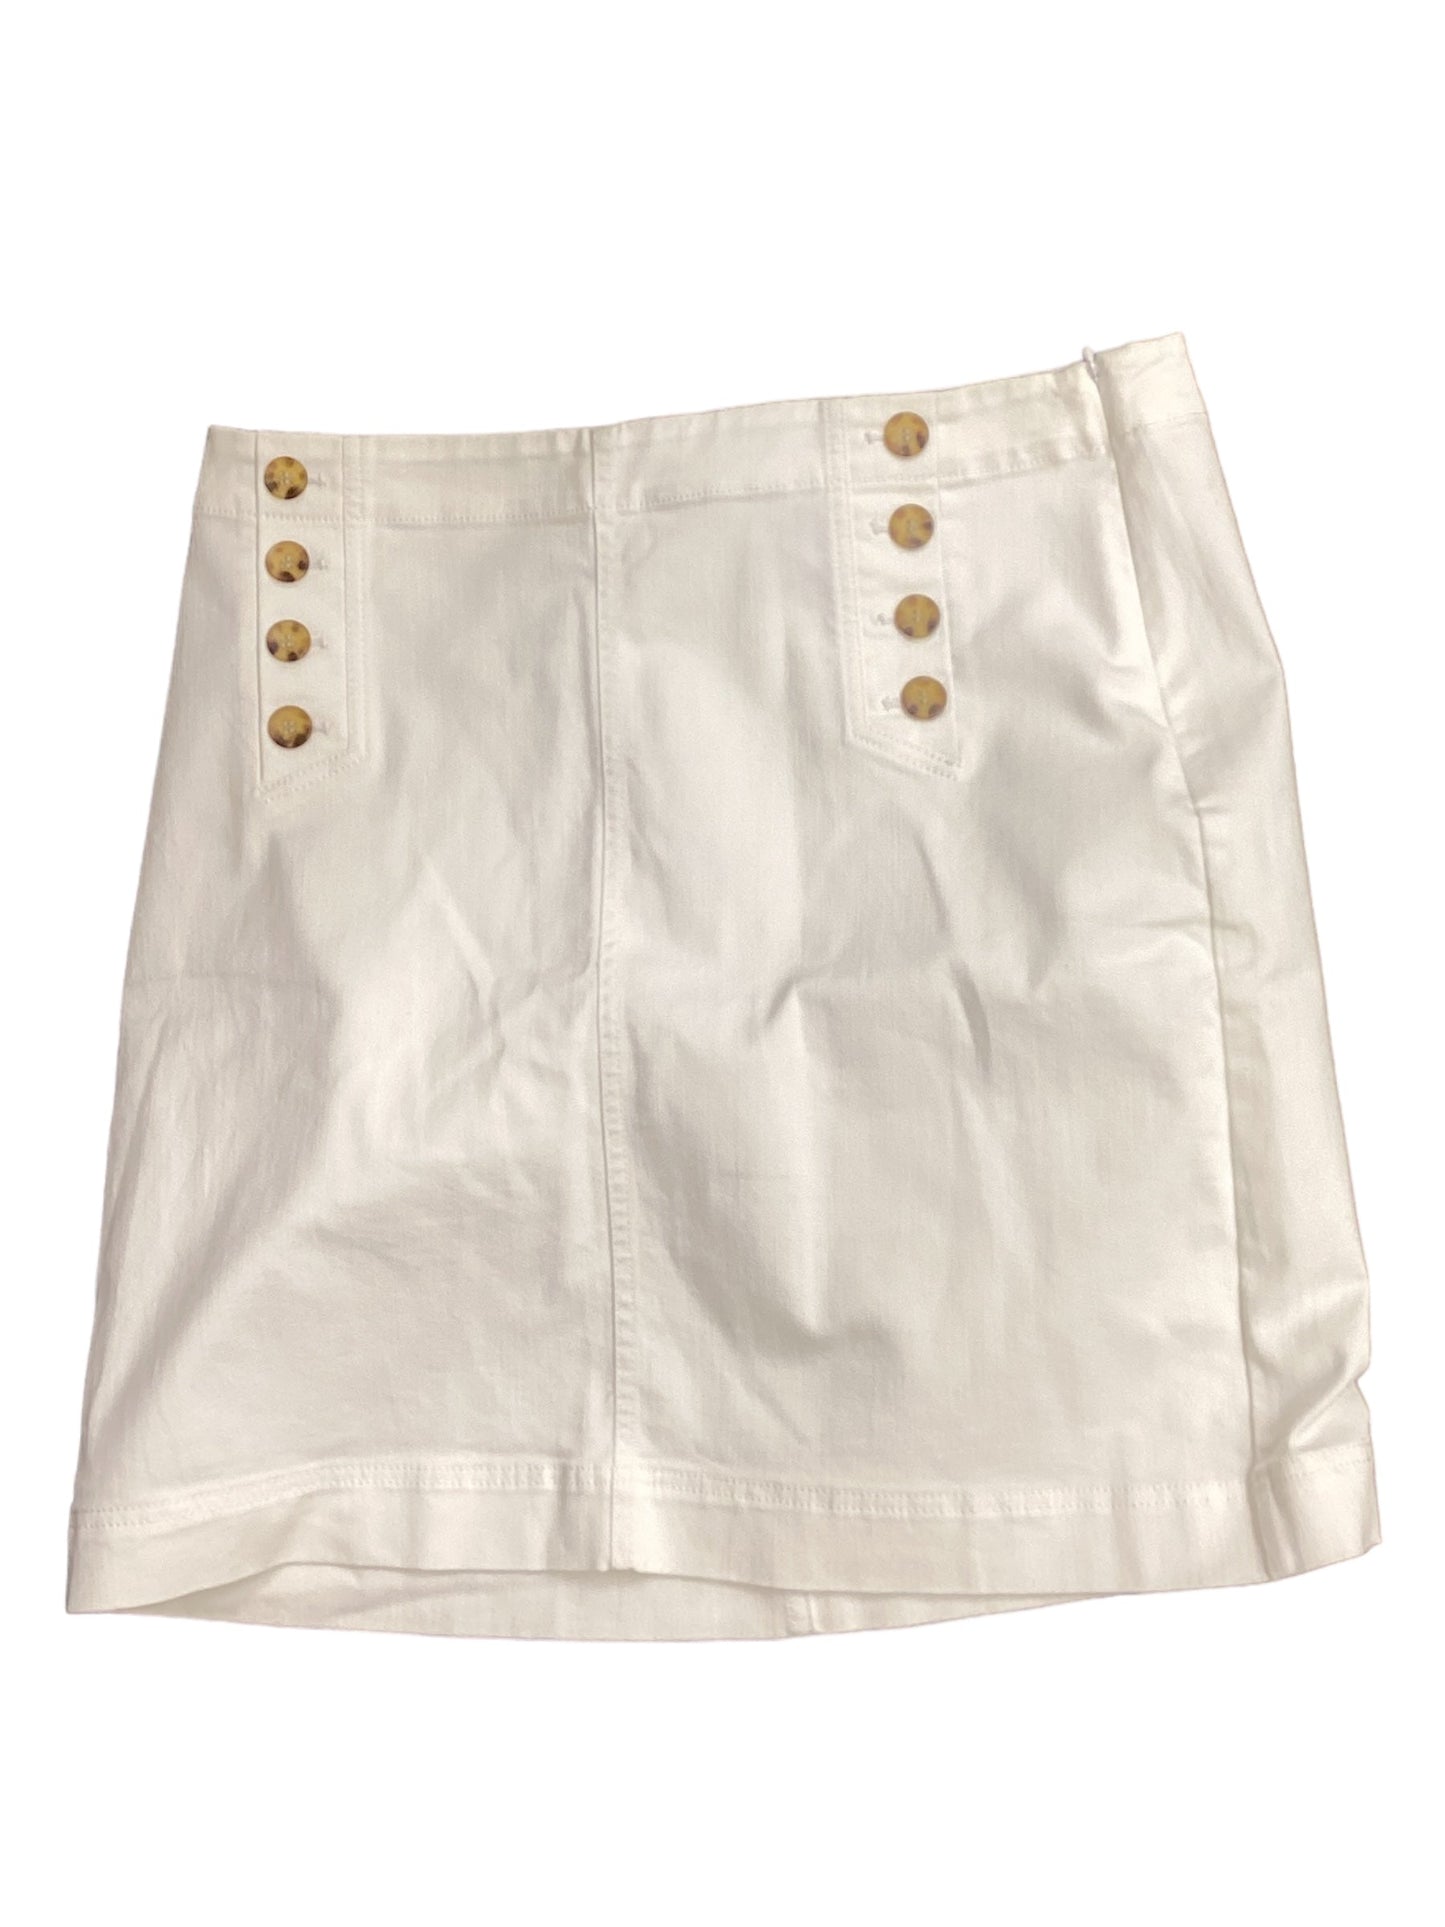 White Skirt Midi Talbots, Size 16